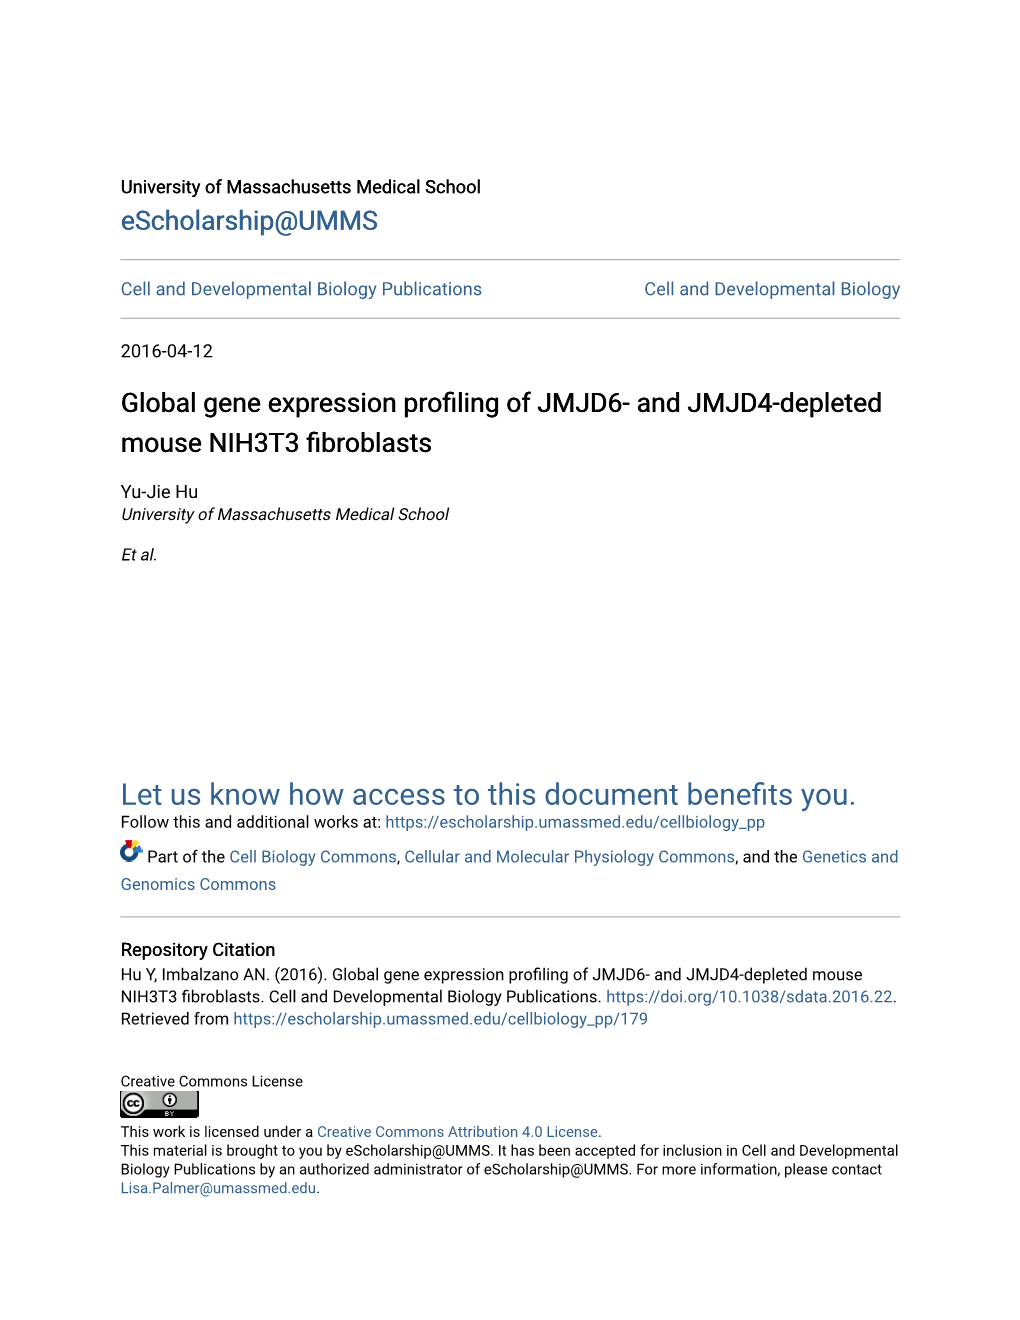 Global Gene Expression Profiling of JMJD6- and JMJD4-Depleted Mouse NIH3T3 Fibroblasts